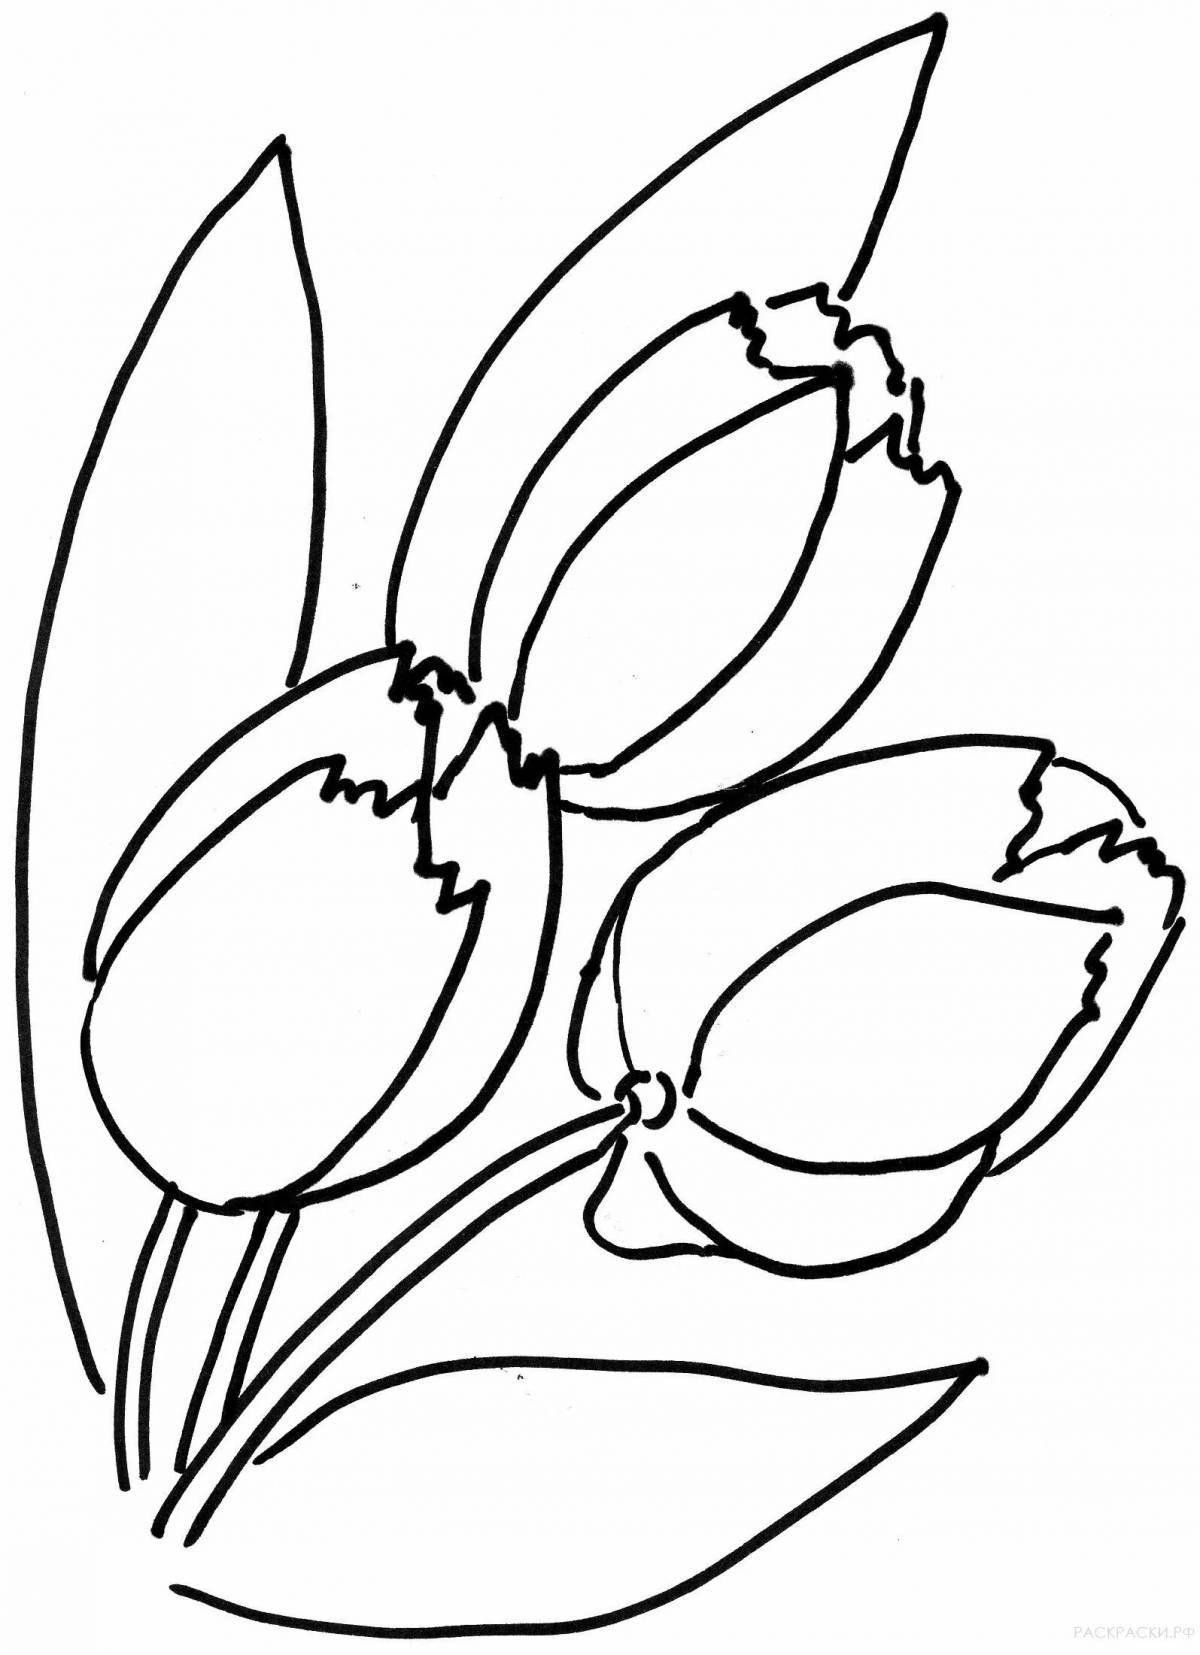 Великолепная страница раскраски тюльпанов